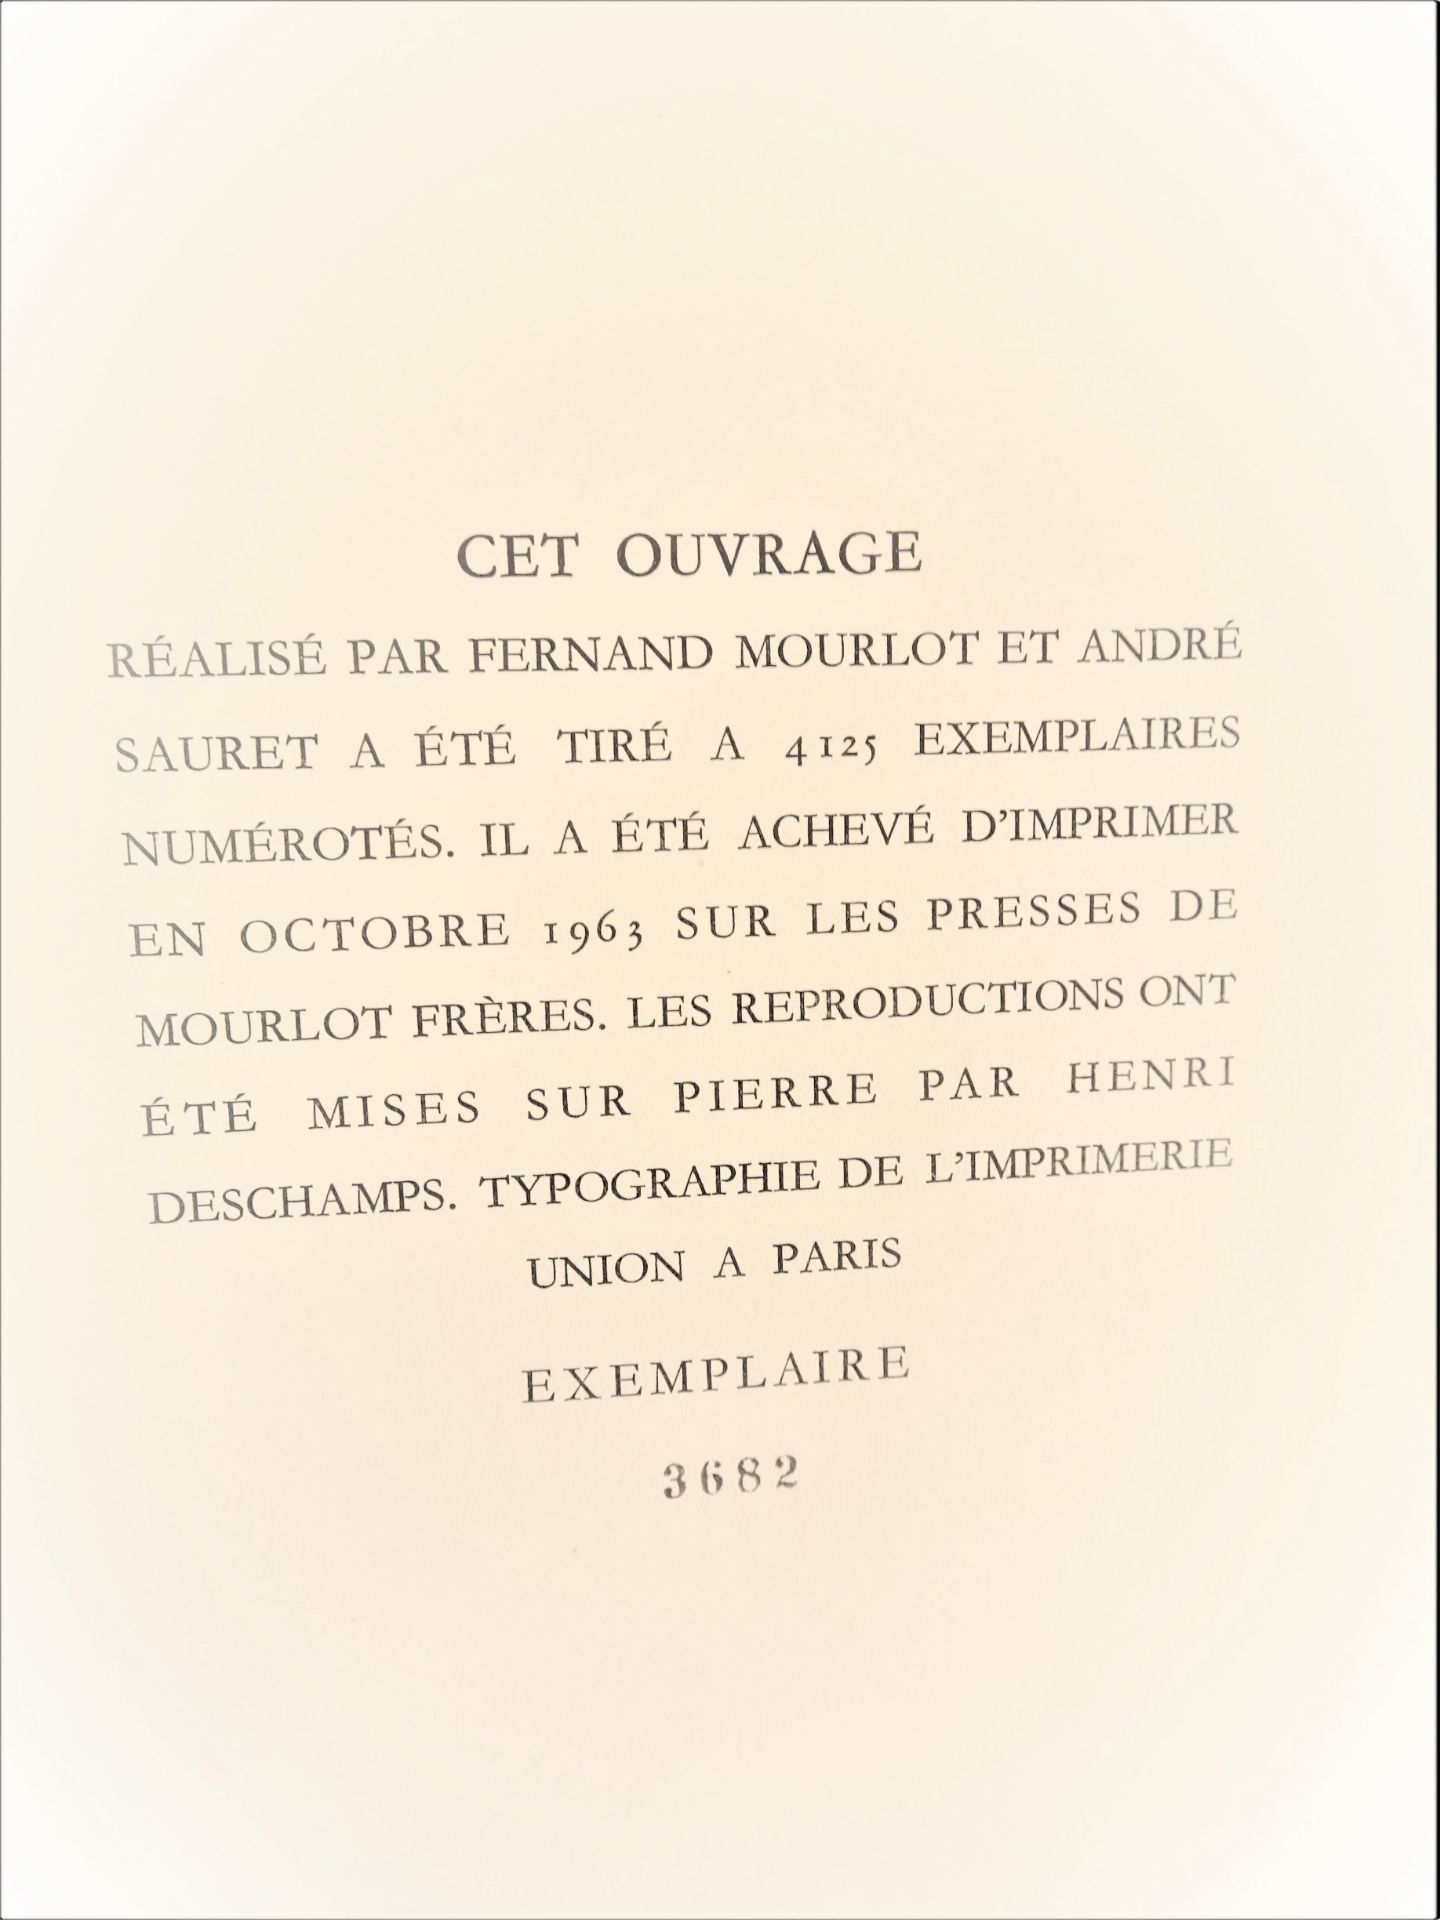 |Art| George Braque, "Braque lithographe", 1963, édition limitée. Fernand Mourlot, catalogue - Image 12 of 12